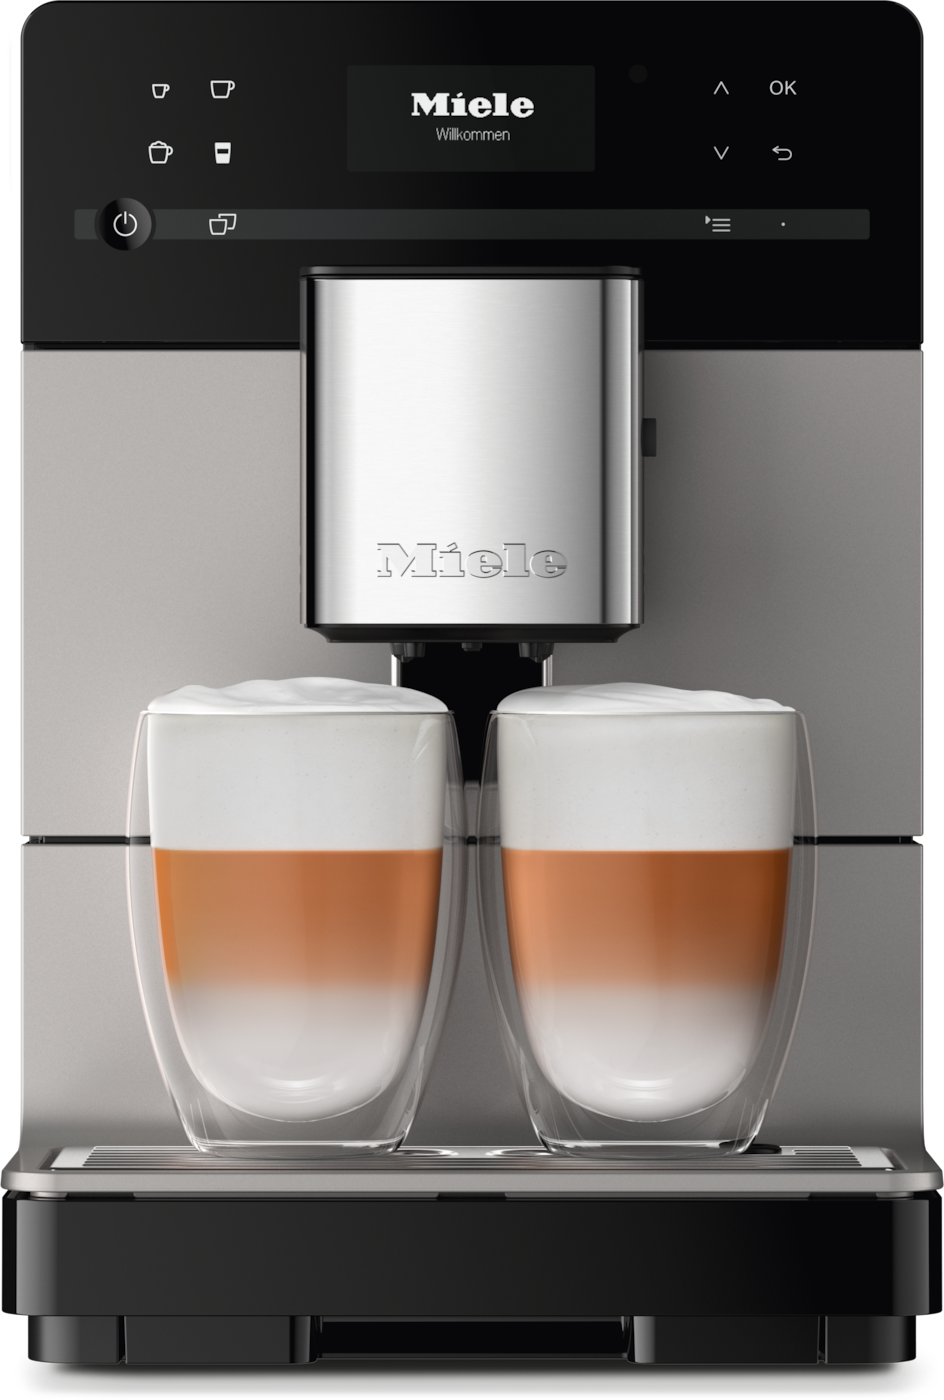 CM 5510 Silence - 独立式咖啡机 